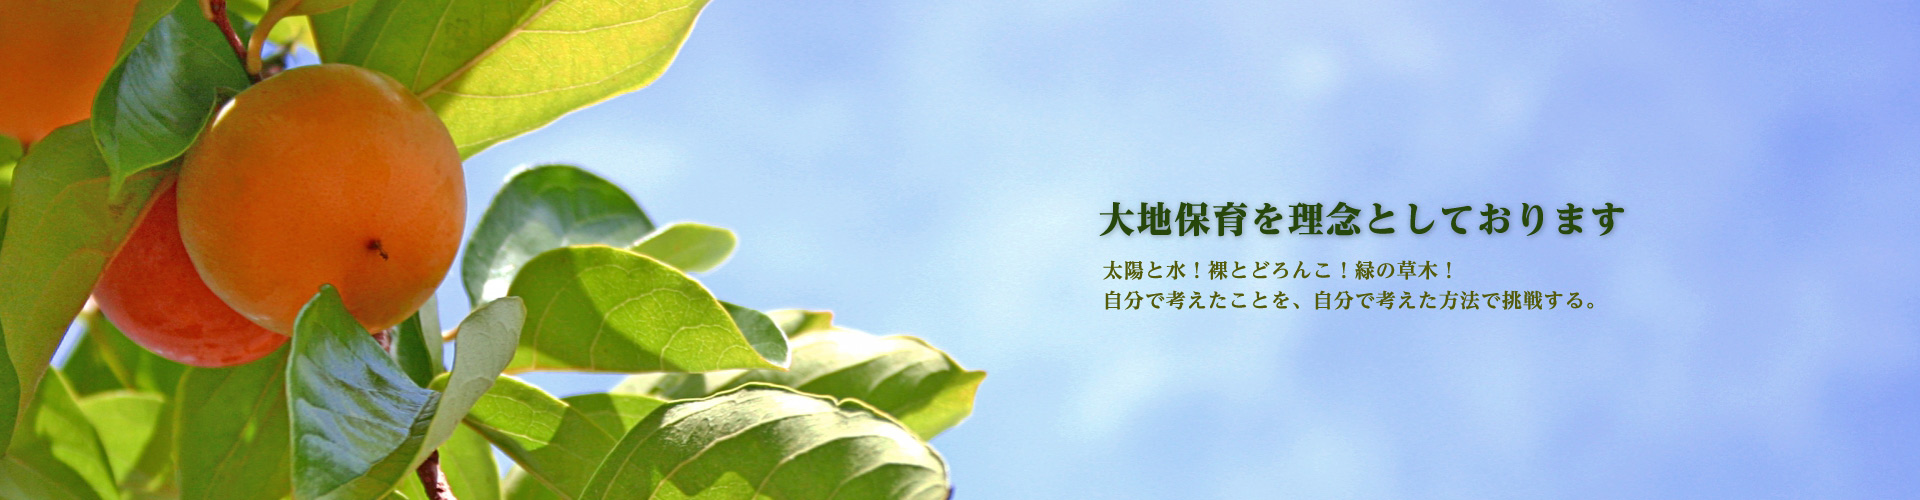 柿ノ木会TOP画像 柿の木の写真